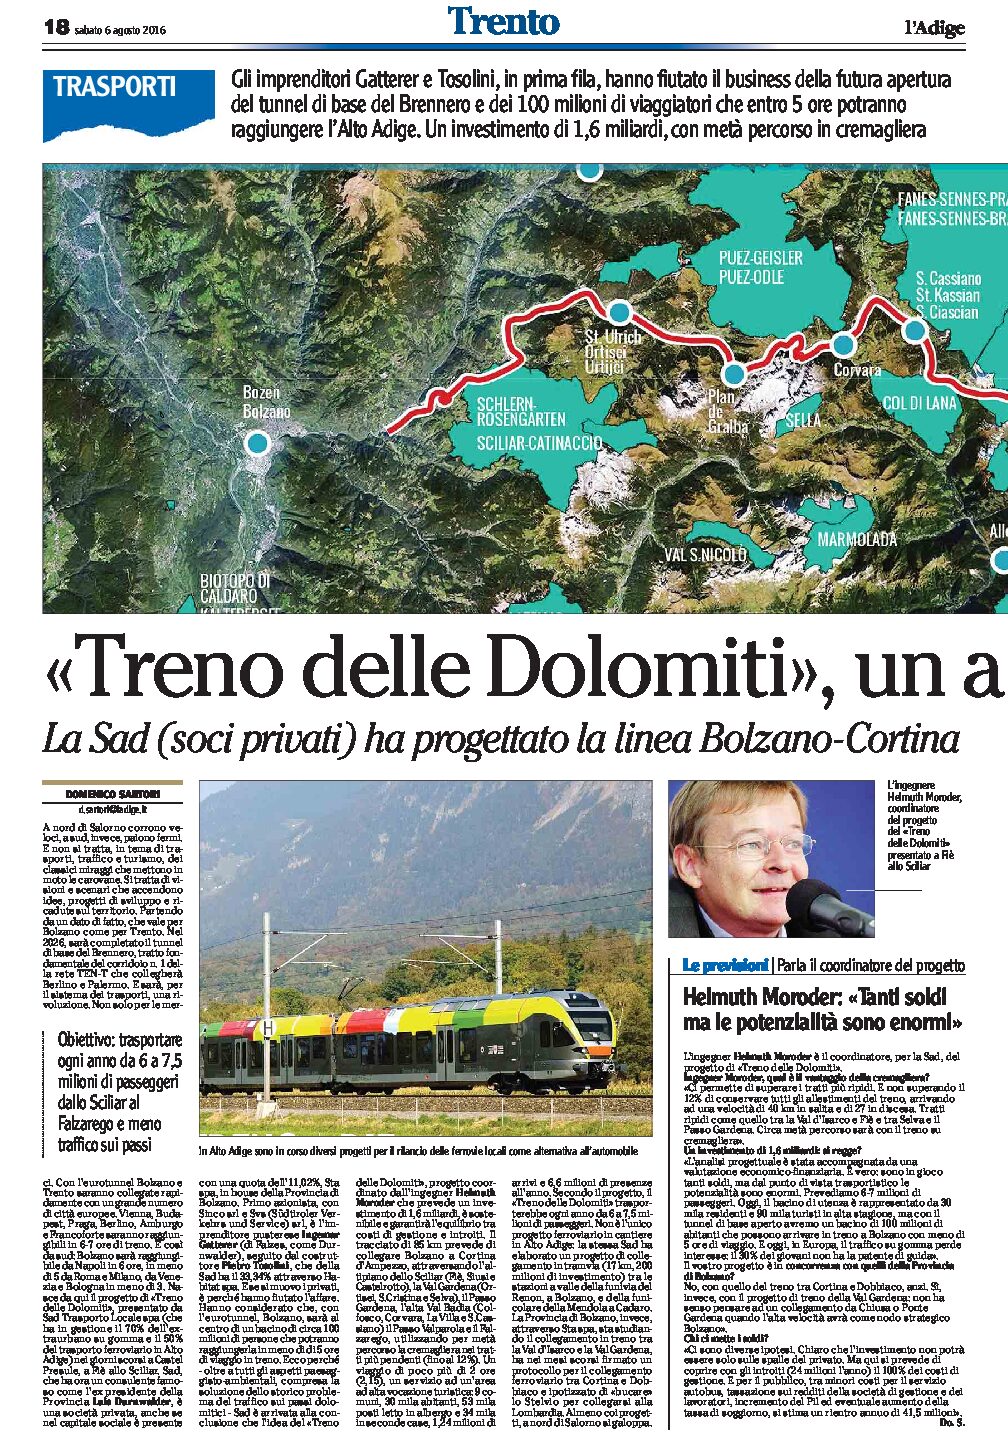 Treno delle Dolomiti: un affare. La Sad ha progettato la linea Bolzano-Cortina